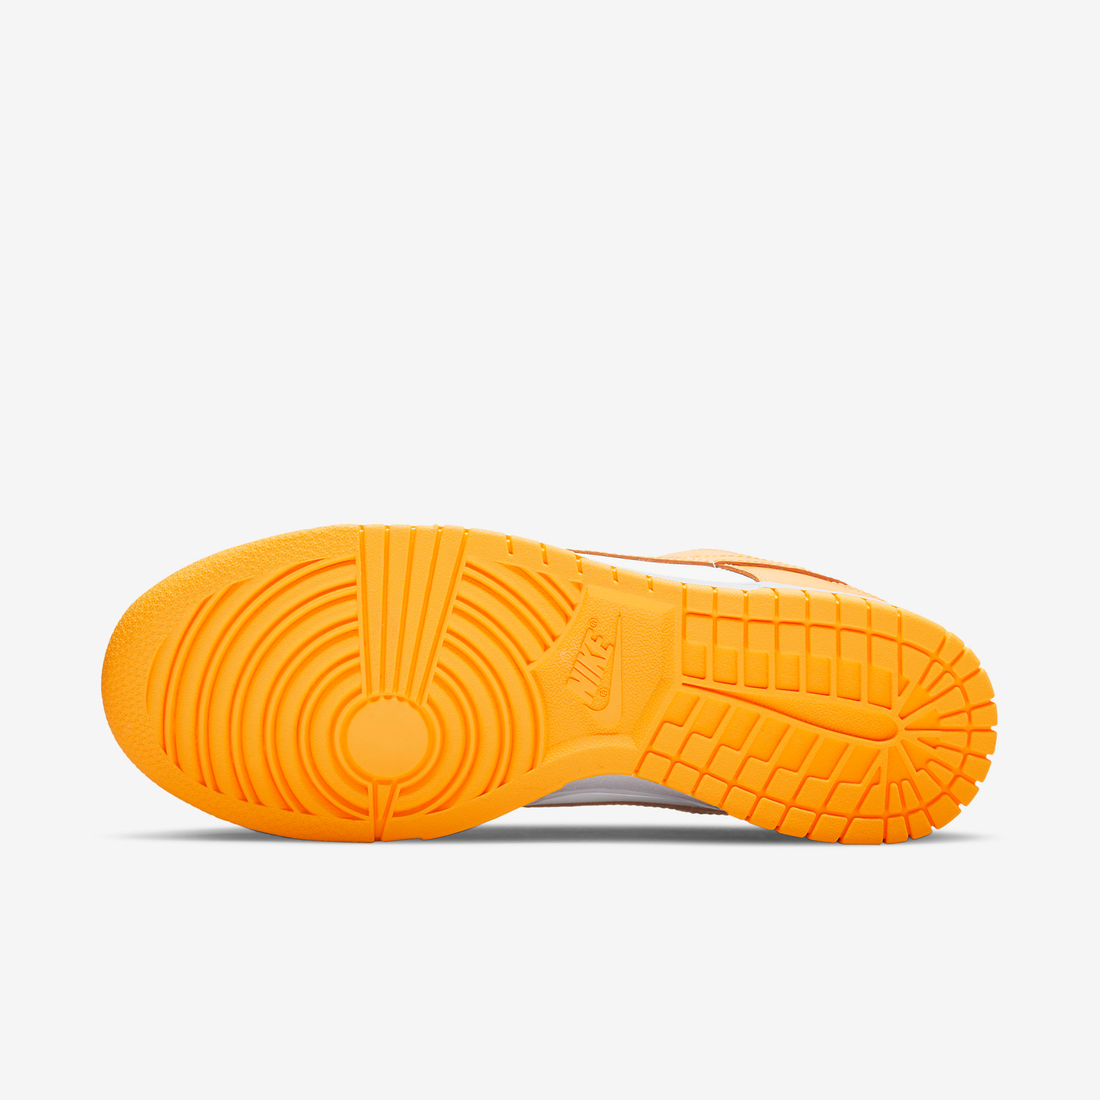 Nike Sneakers, Dunk Low ‘Laser Orange’ (W)